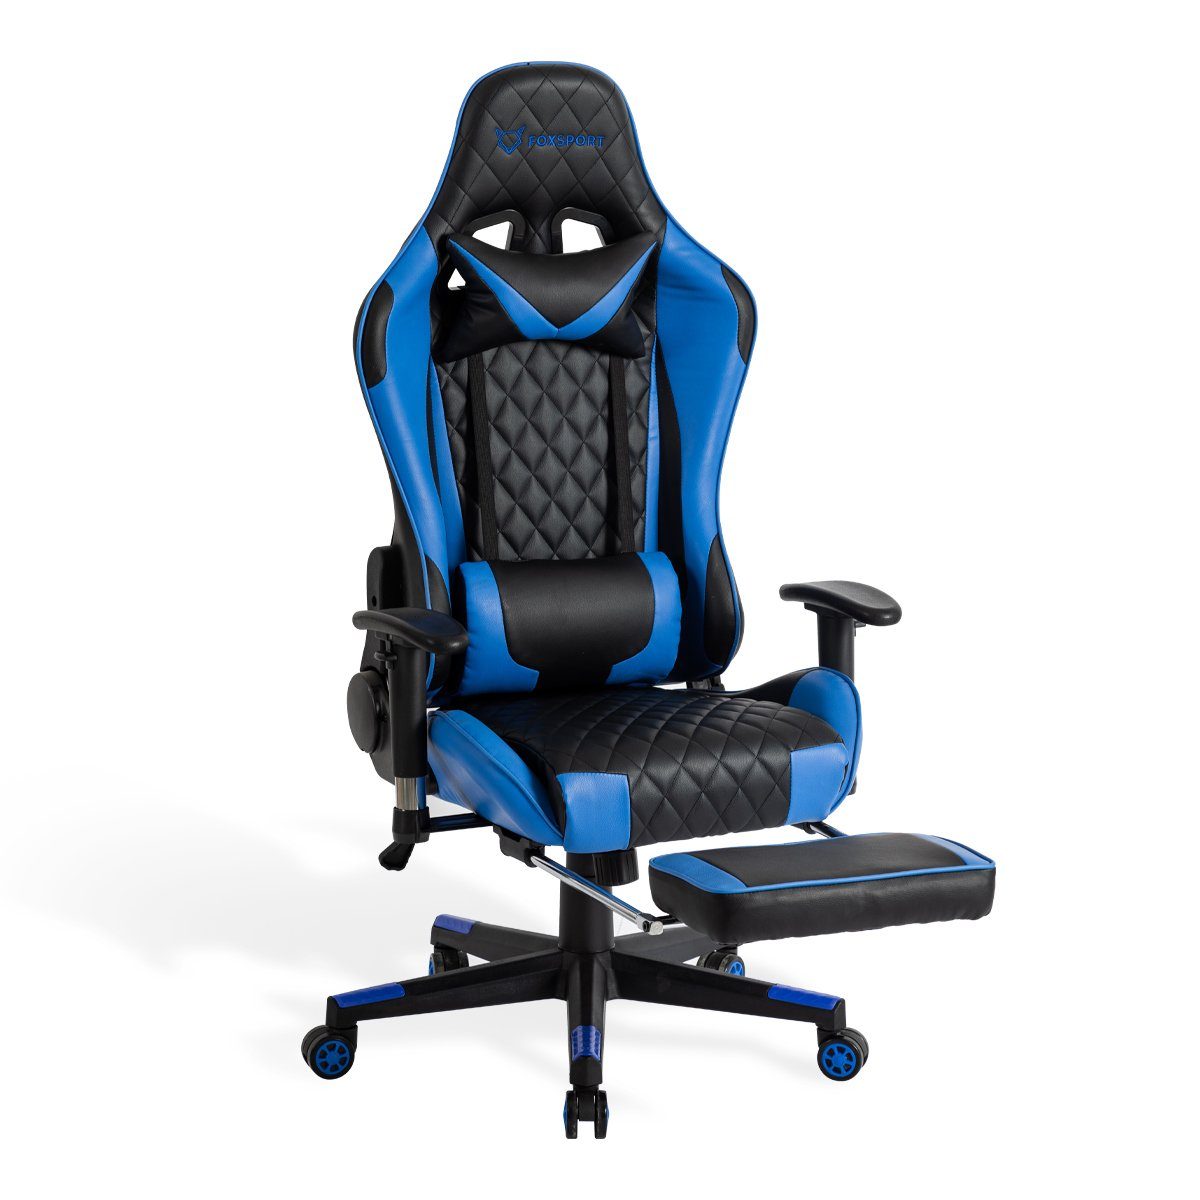 IKIDO Gaming-Stuhl Pedal-Gaming-Stuhl (Professioneller Gamingstuhl), Mit Beinauflage und Fußstütze, Eingebauter Wippmechanismus blau